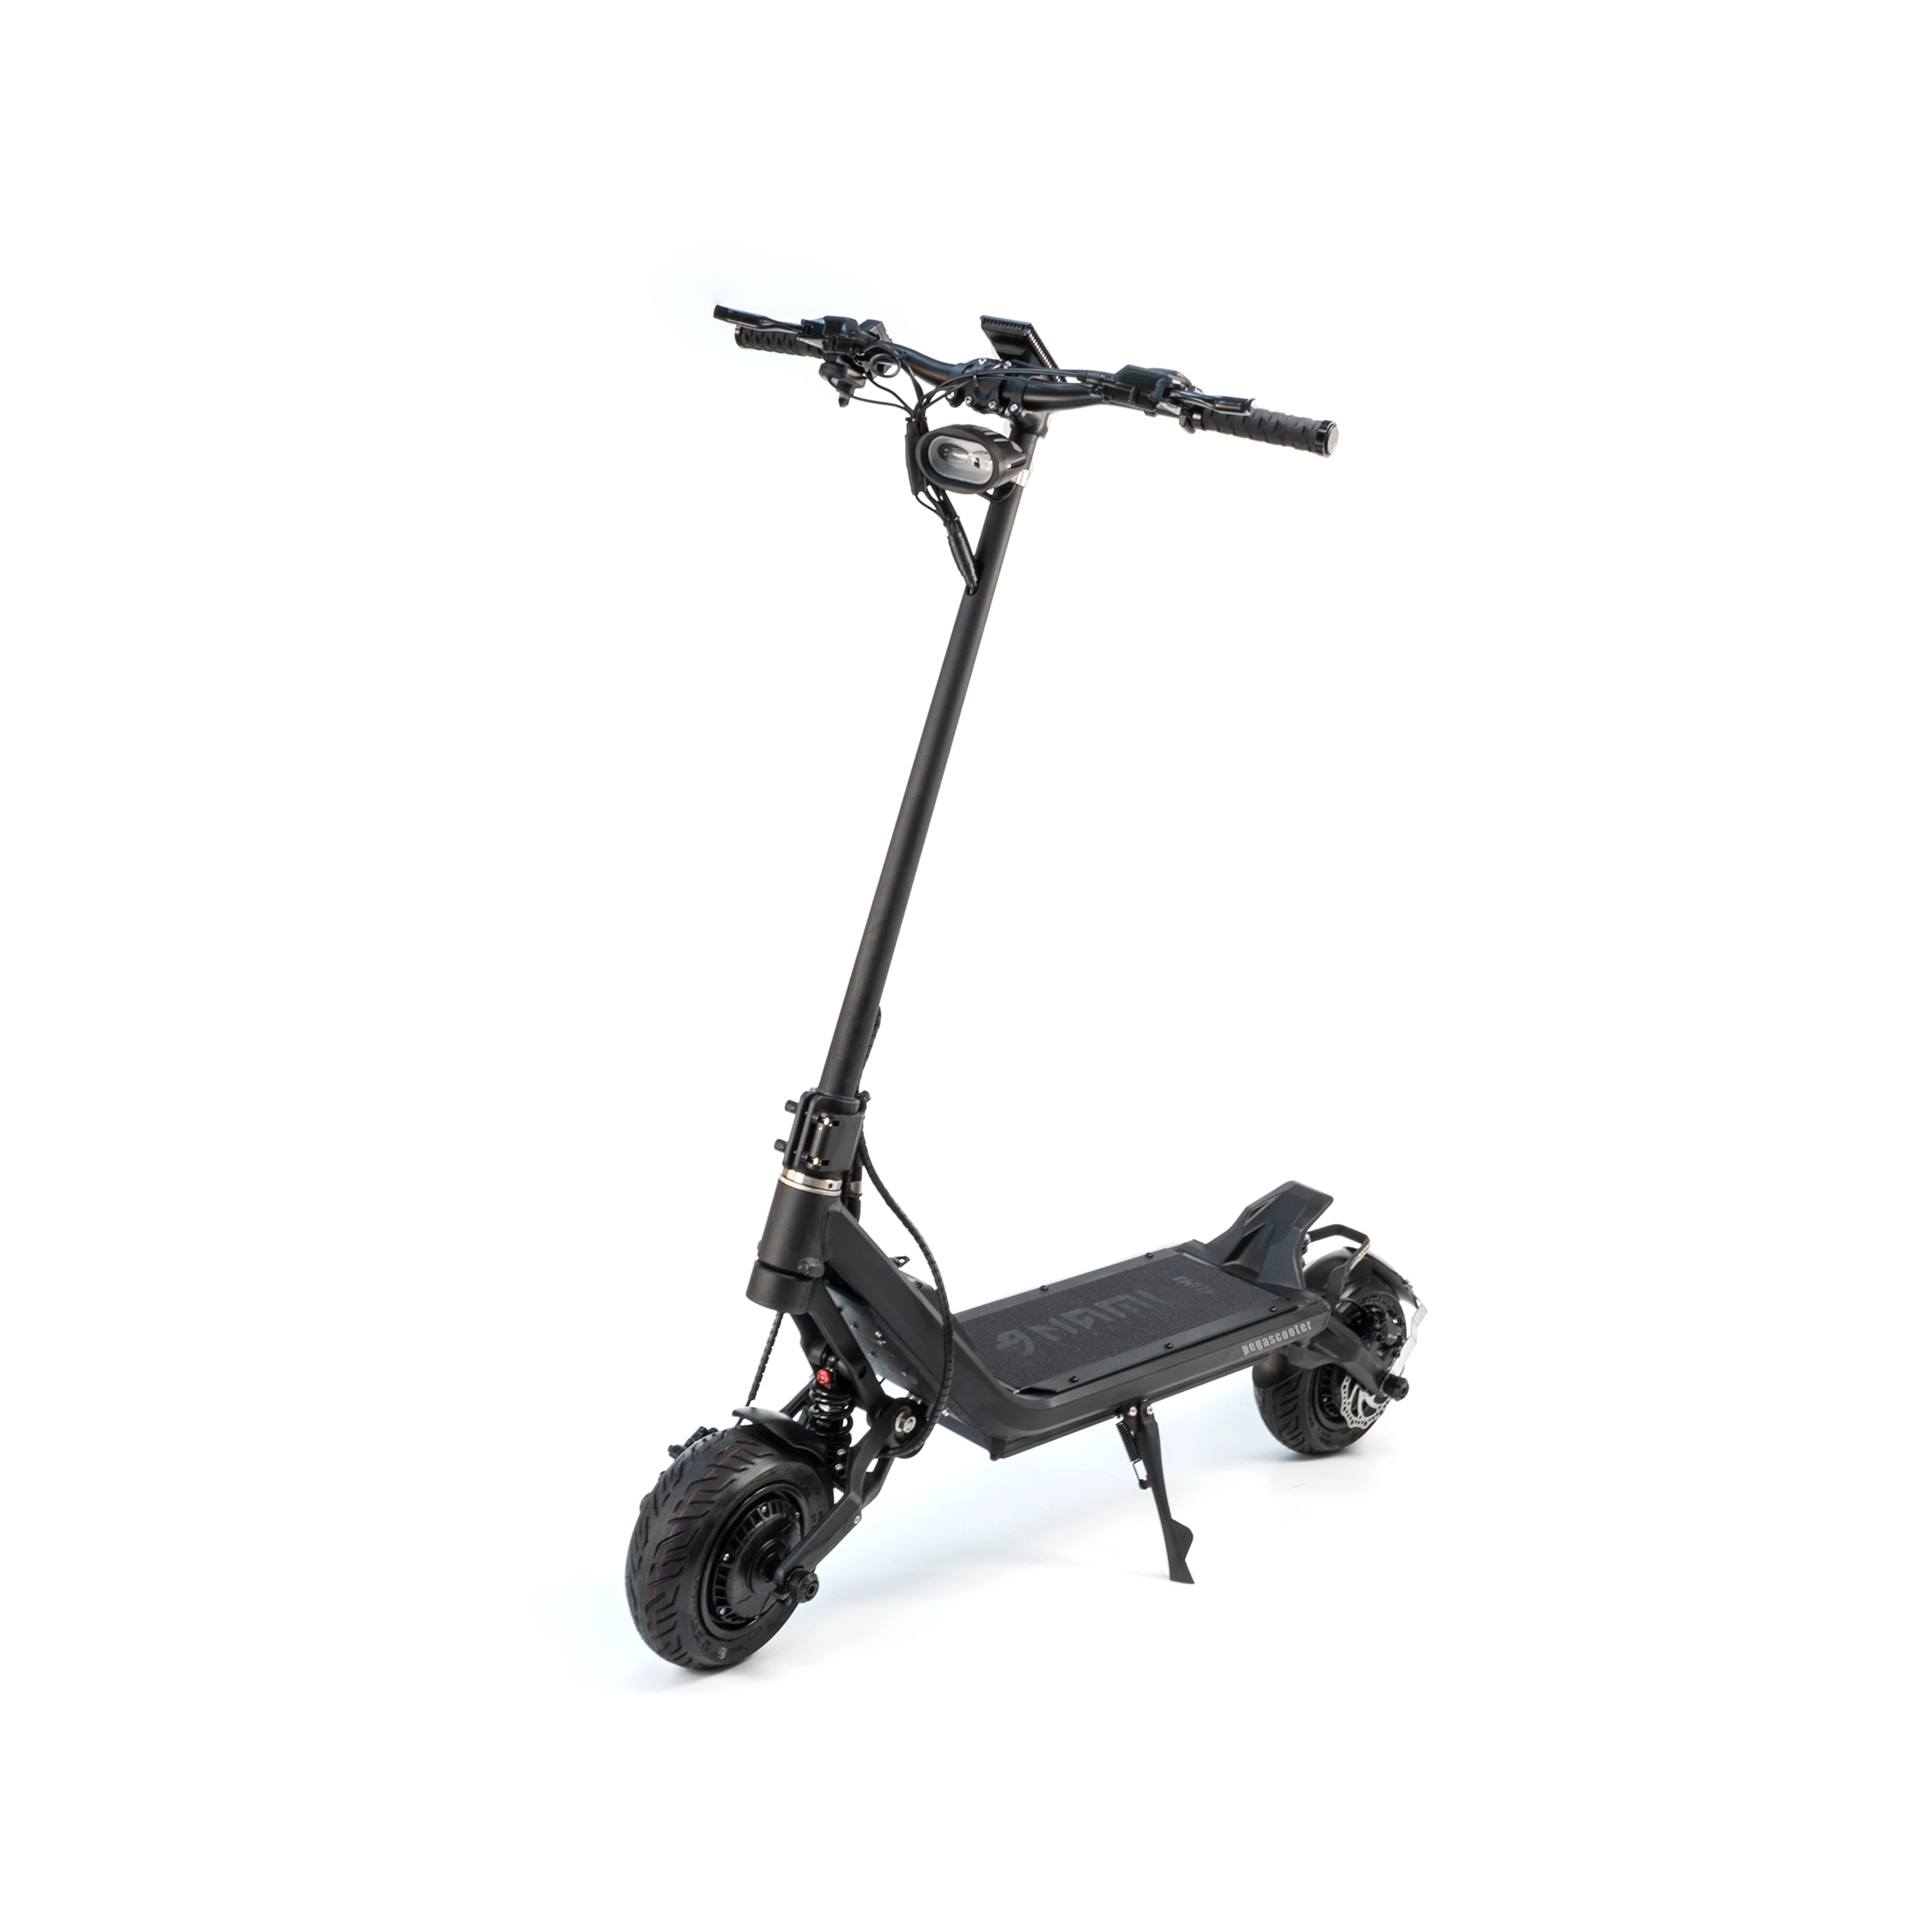 Autêntica scooter elétrica Nami Klima Max Canada, com 60 V e 30 V. Com características impressionantes para deslocações urbanas